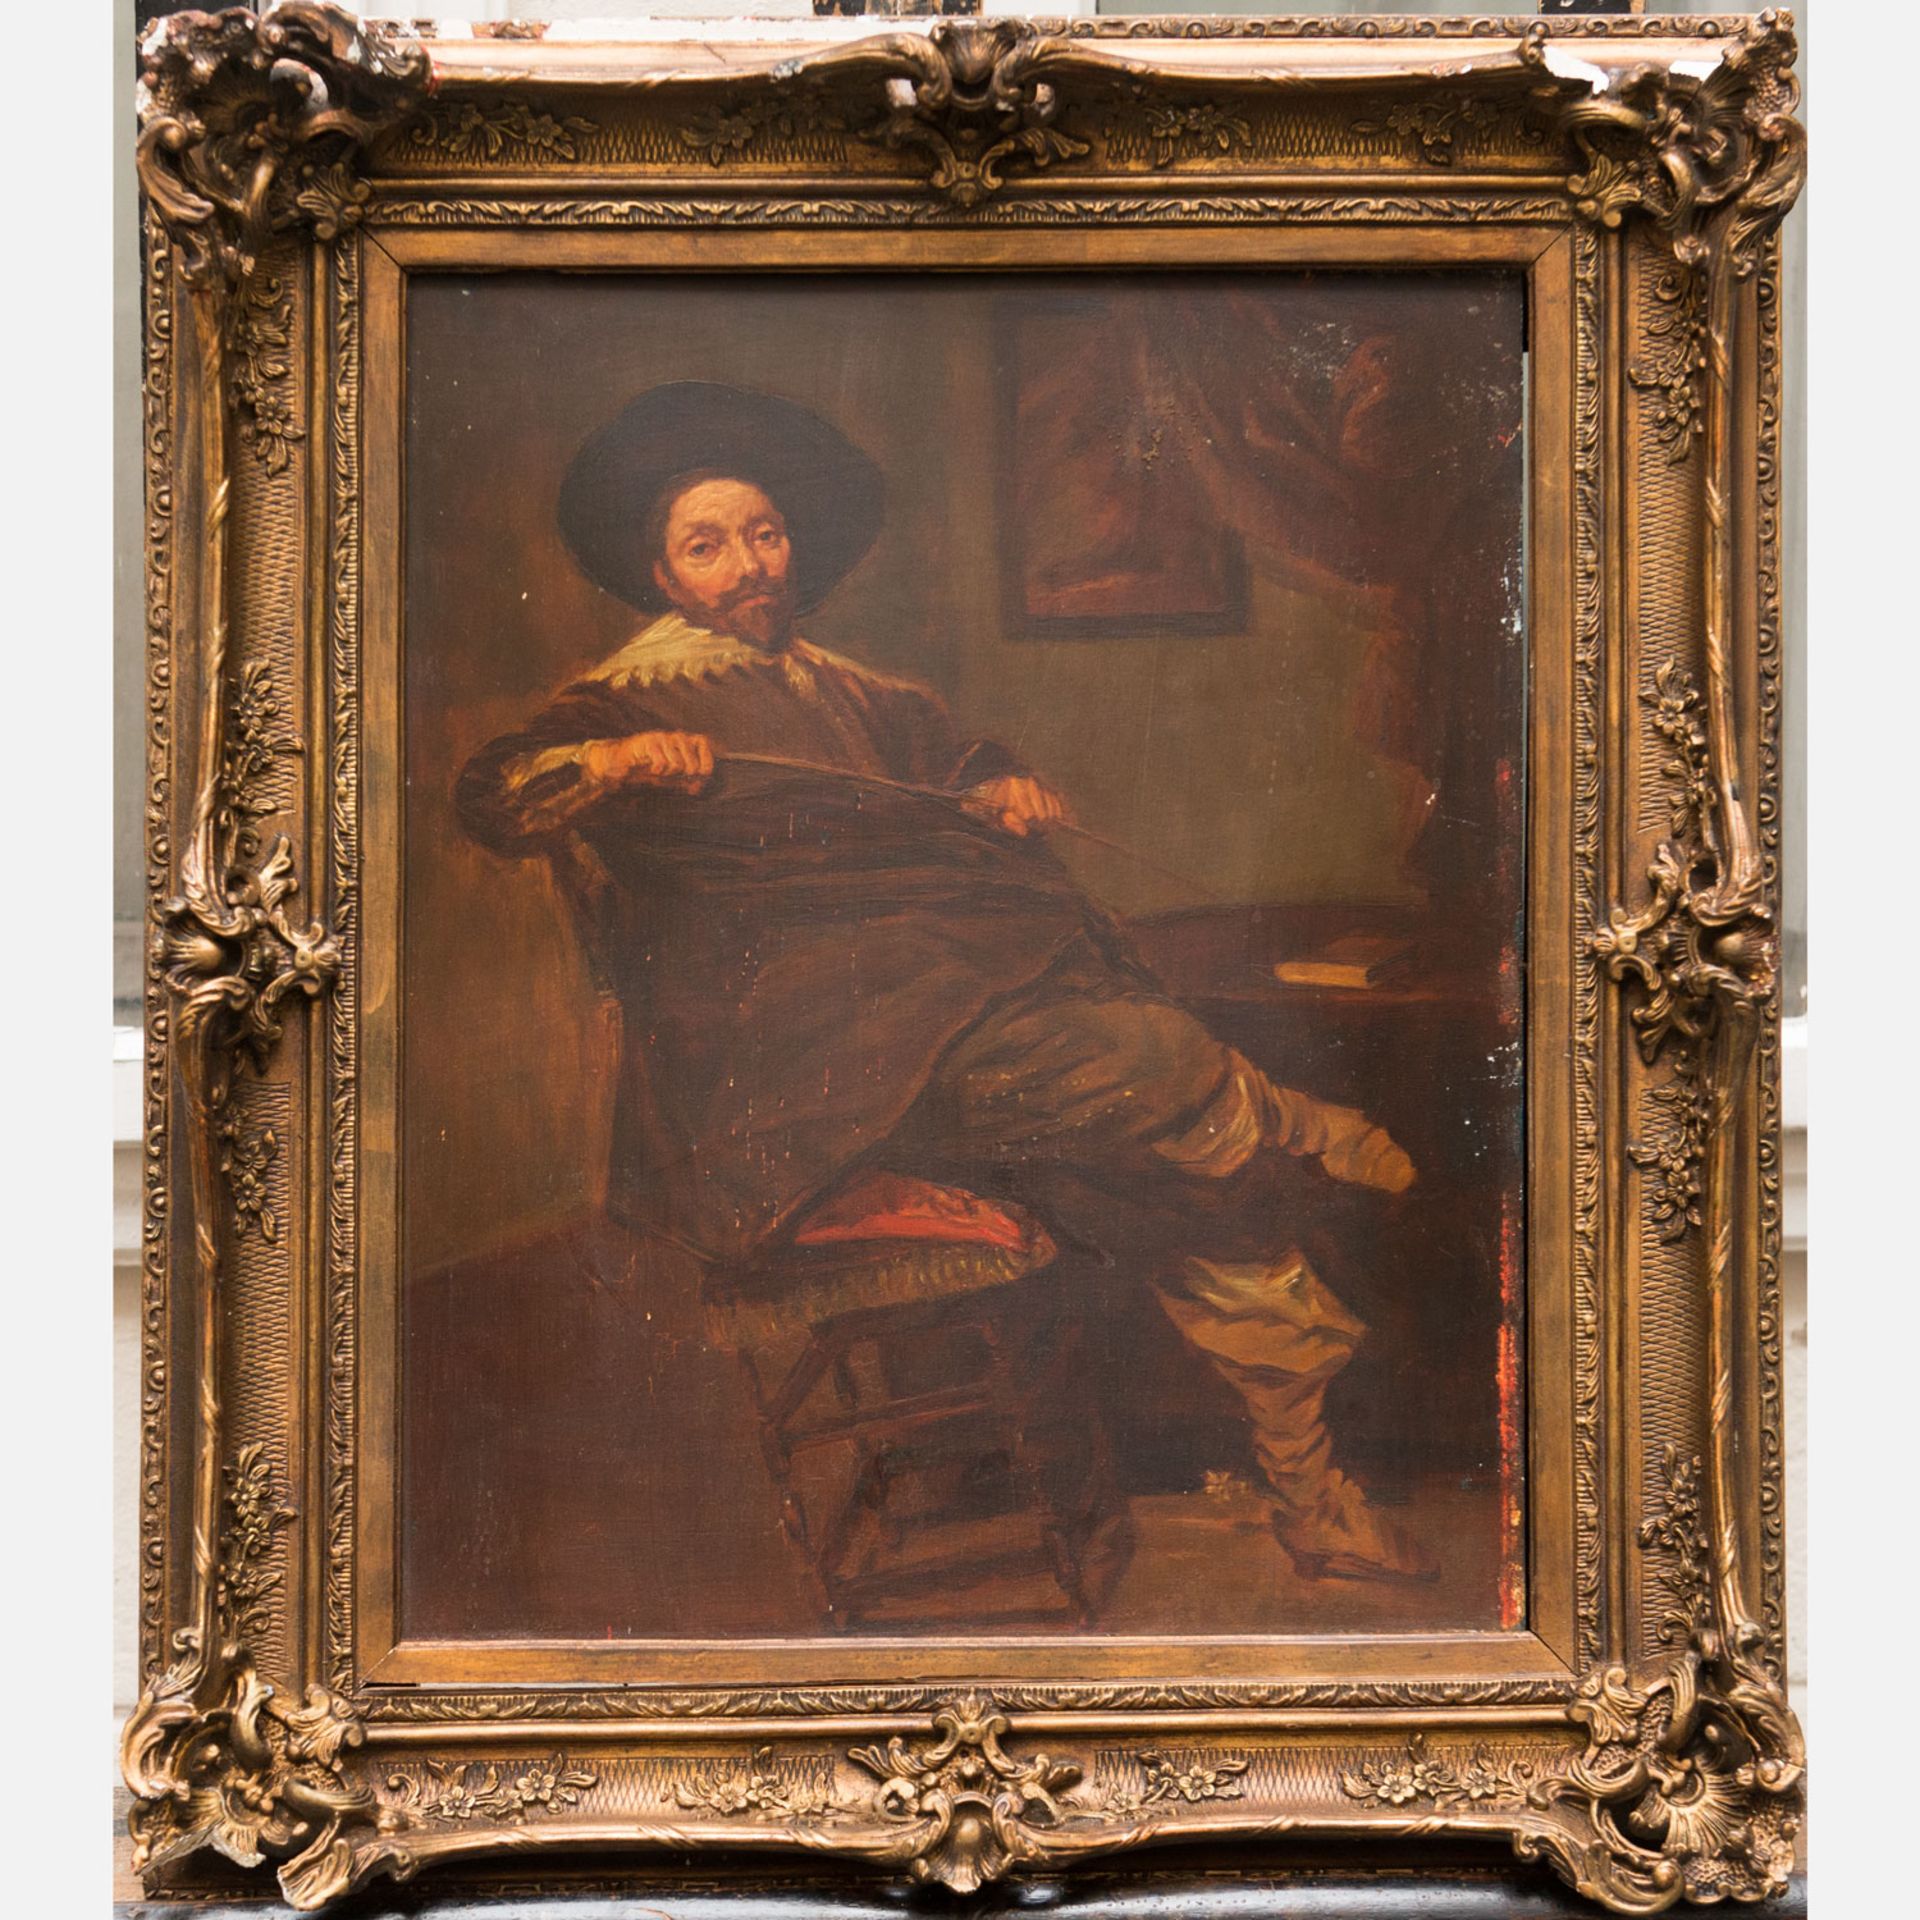 Frans Hals (1582-1666) – Follower